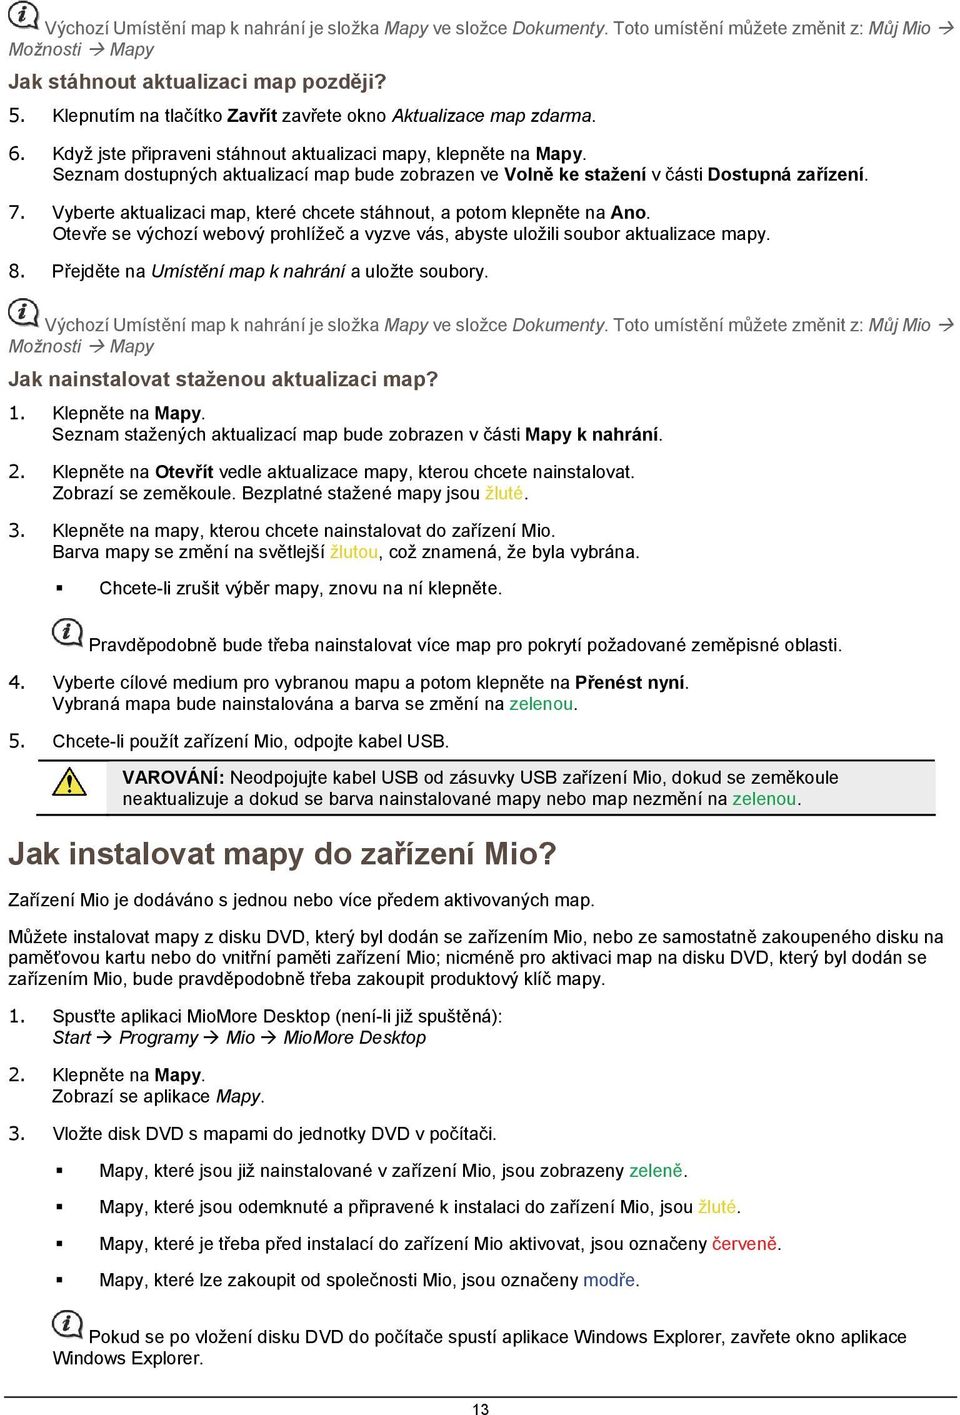 Řada Moov V. Příručka k aplikaci MioMore Desktop - PDF Stažení zdarma